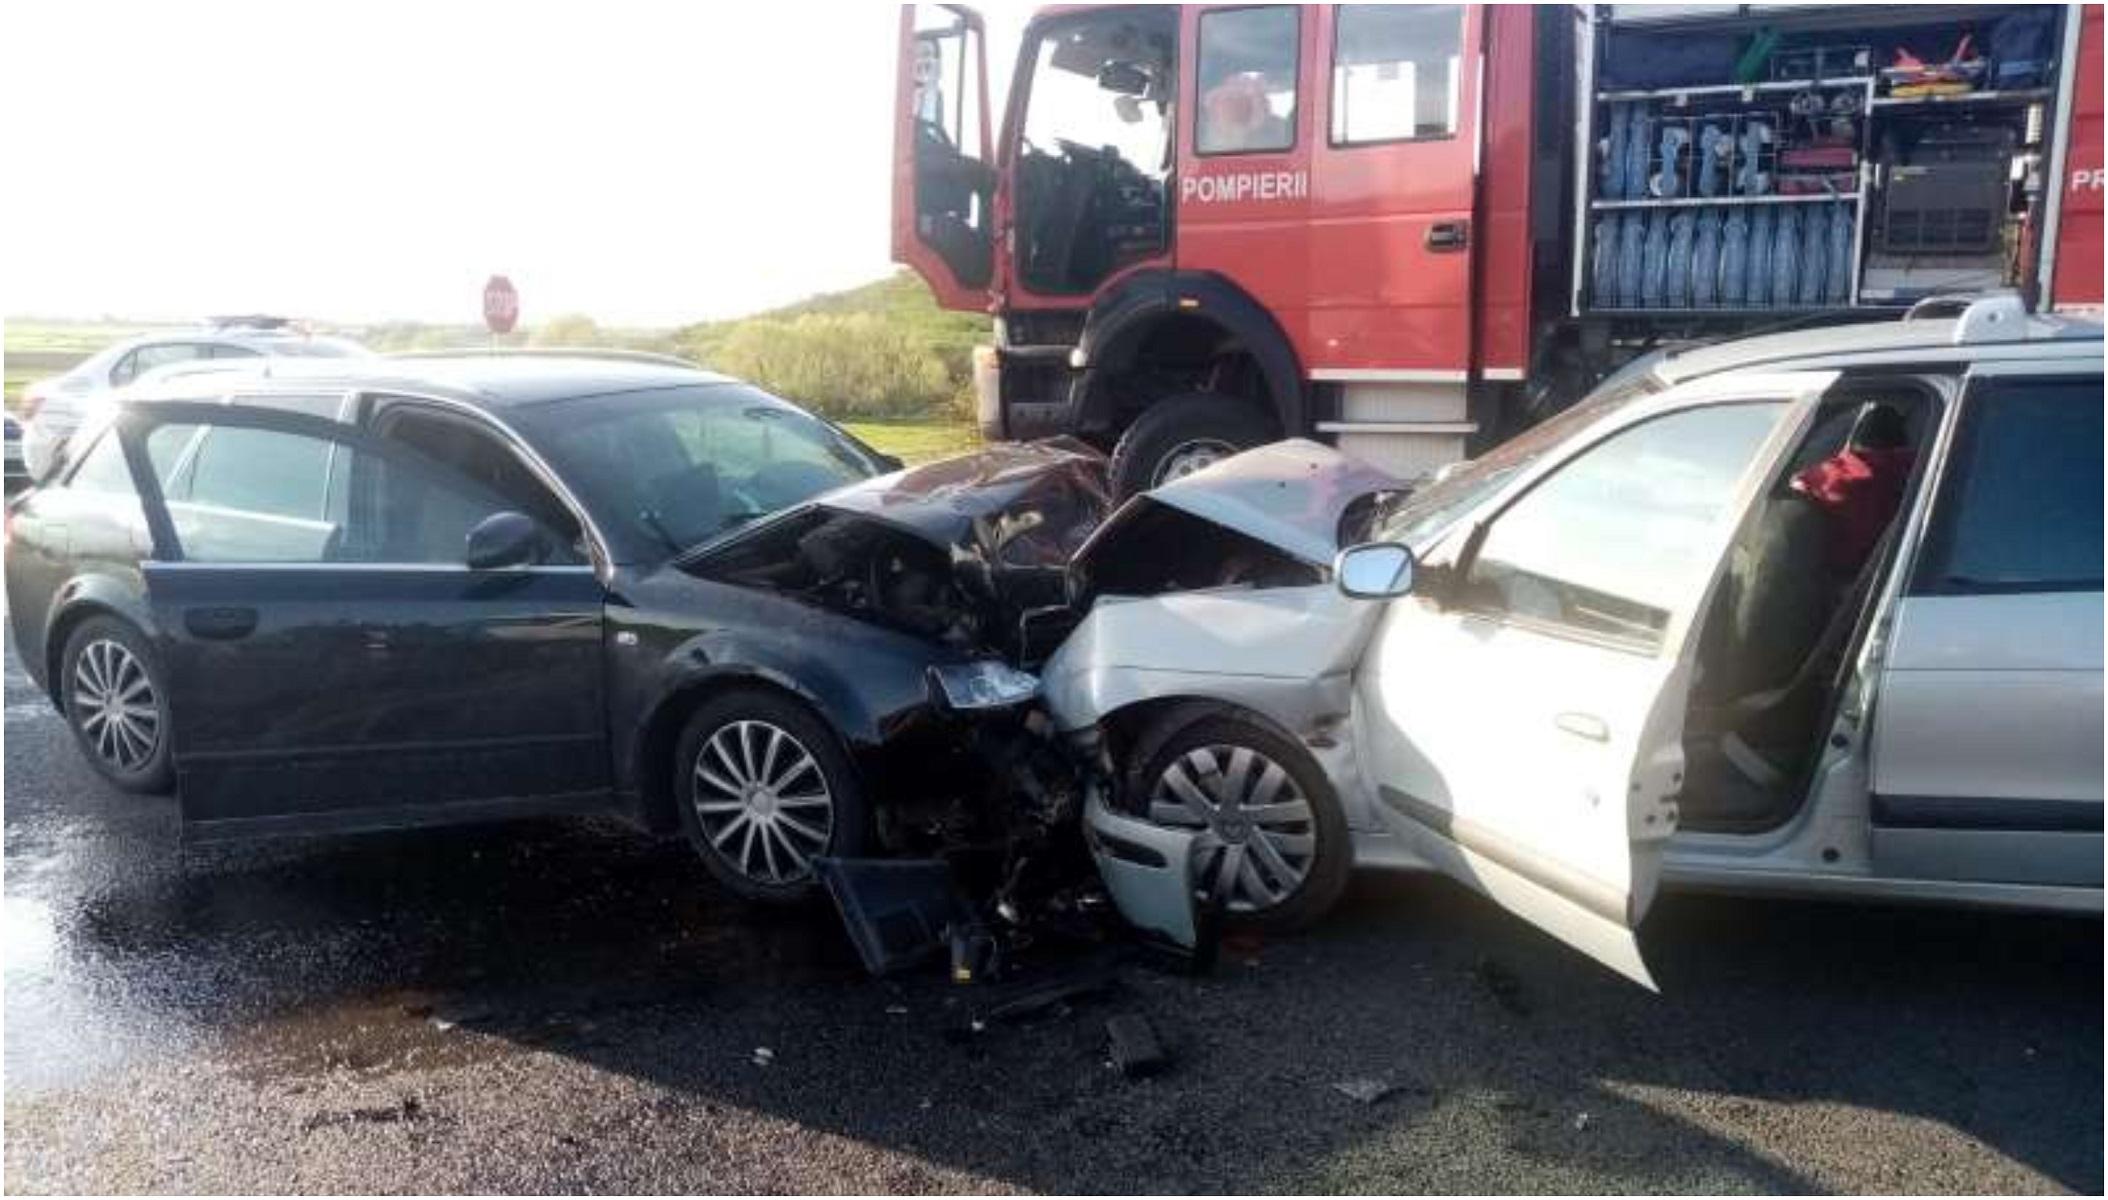 Patru persoane au ajuns la spital după ce două mașini s-au ciocnit frontal într-o intersecție din Hunedoara